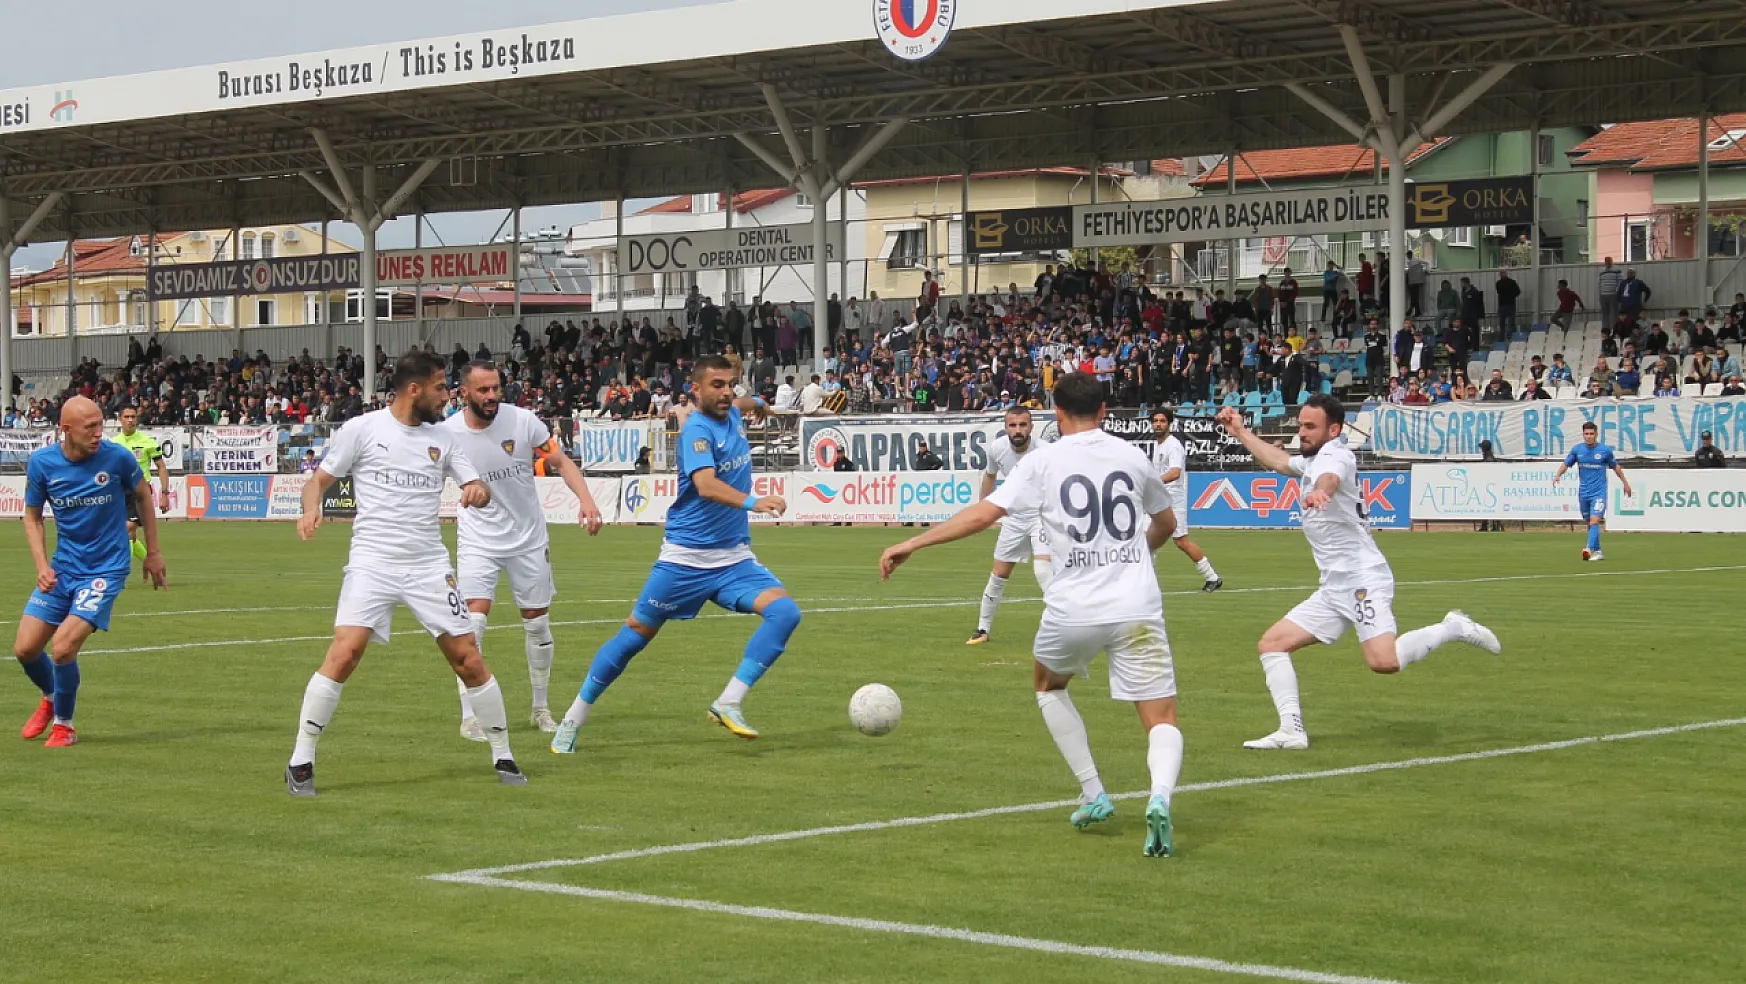 Fethiyespor'un kalan maçları